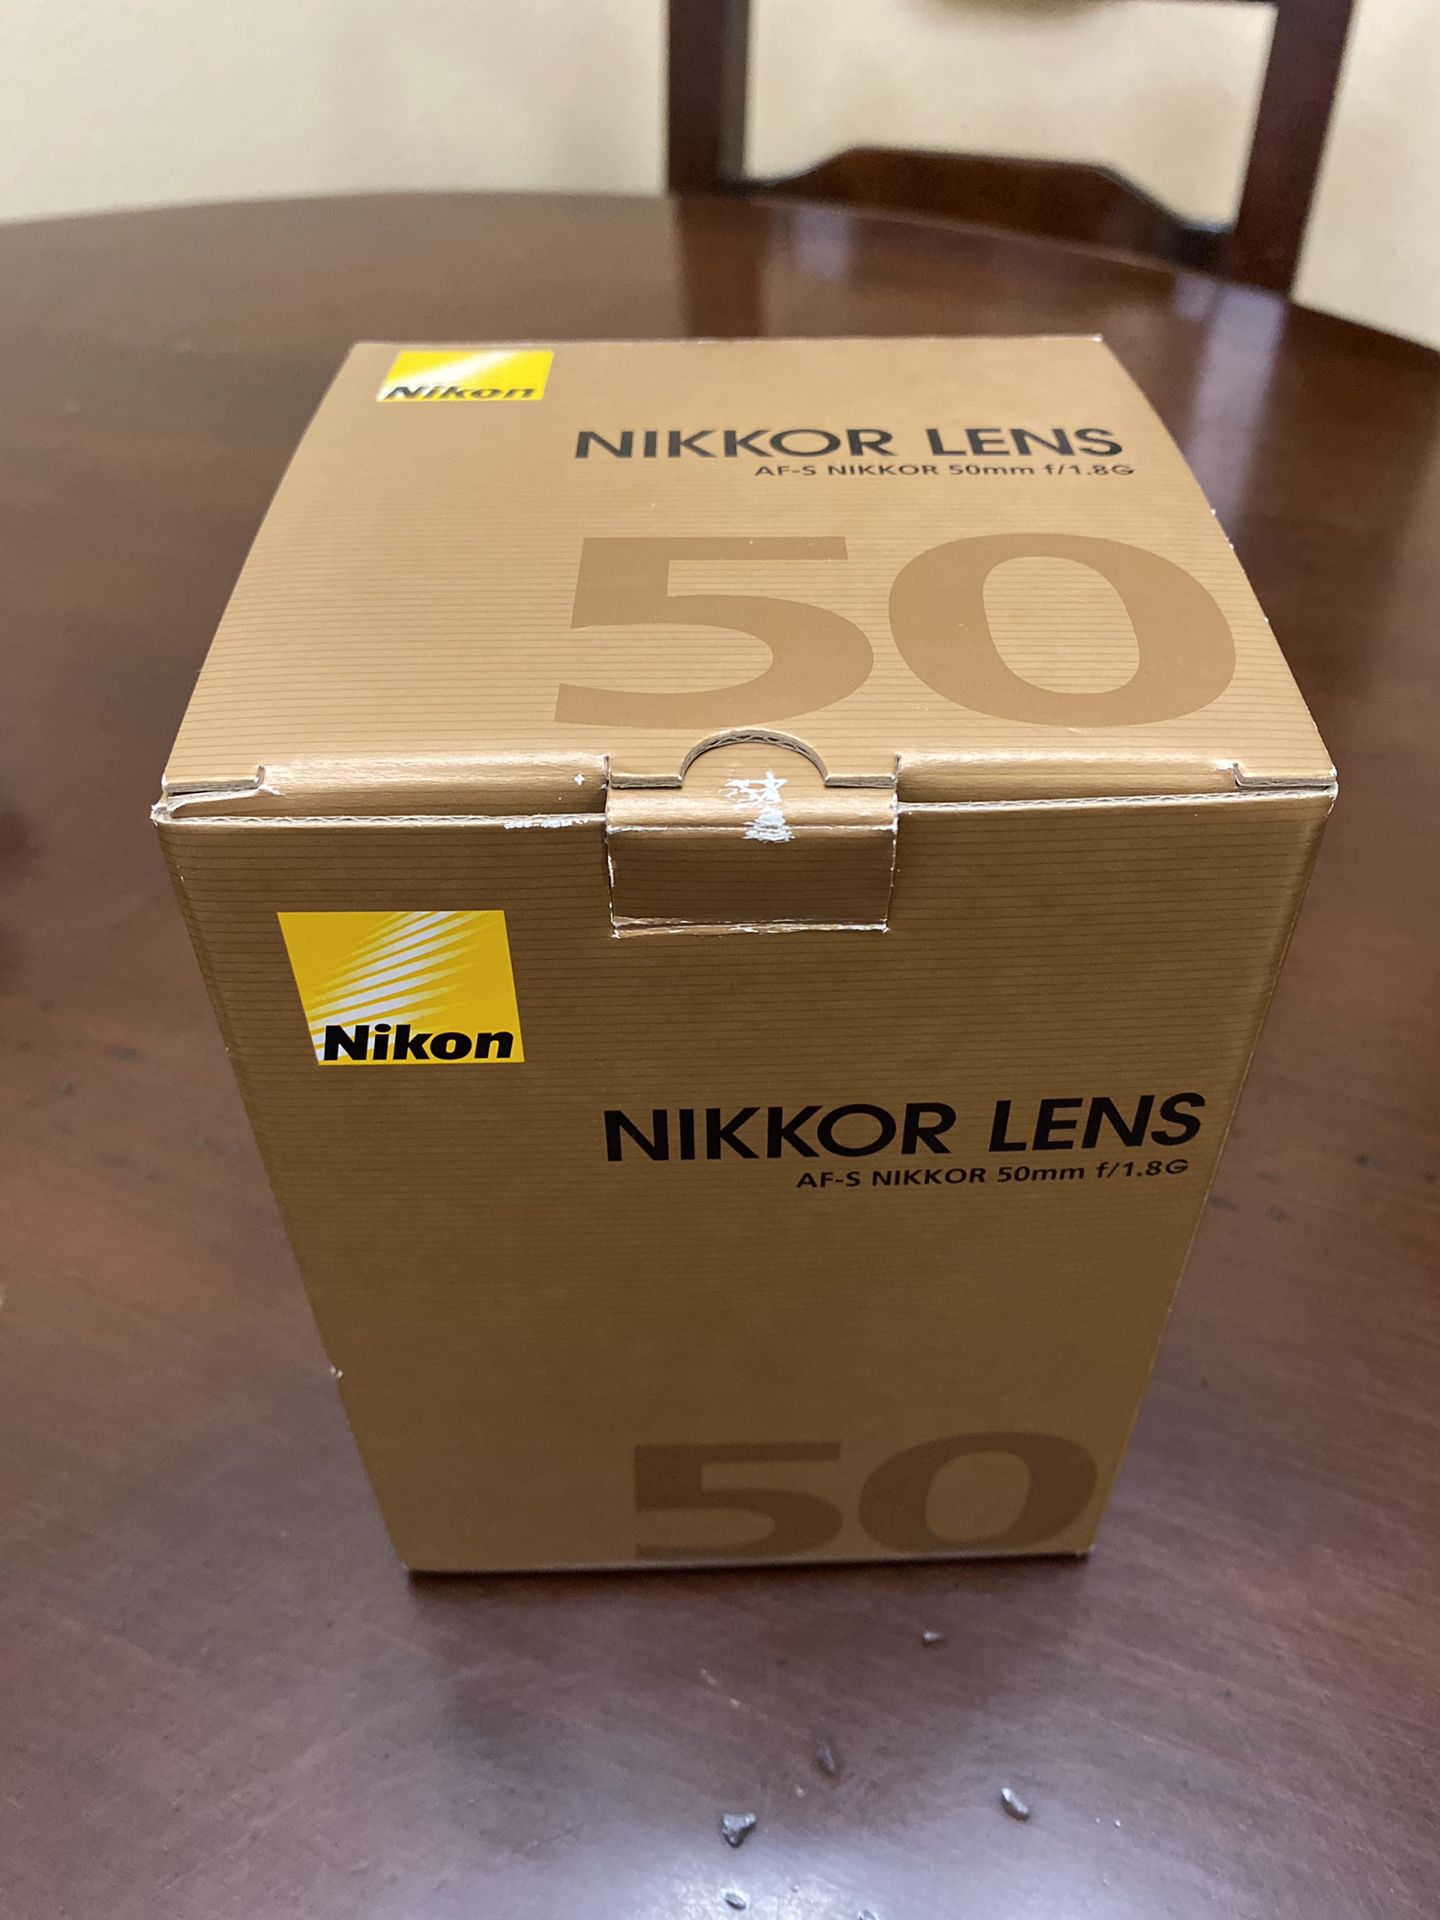 Nikkon lens af- s nikkor 50 mm f 1.8g